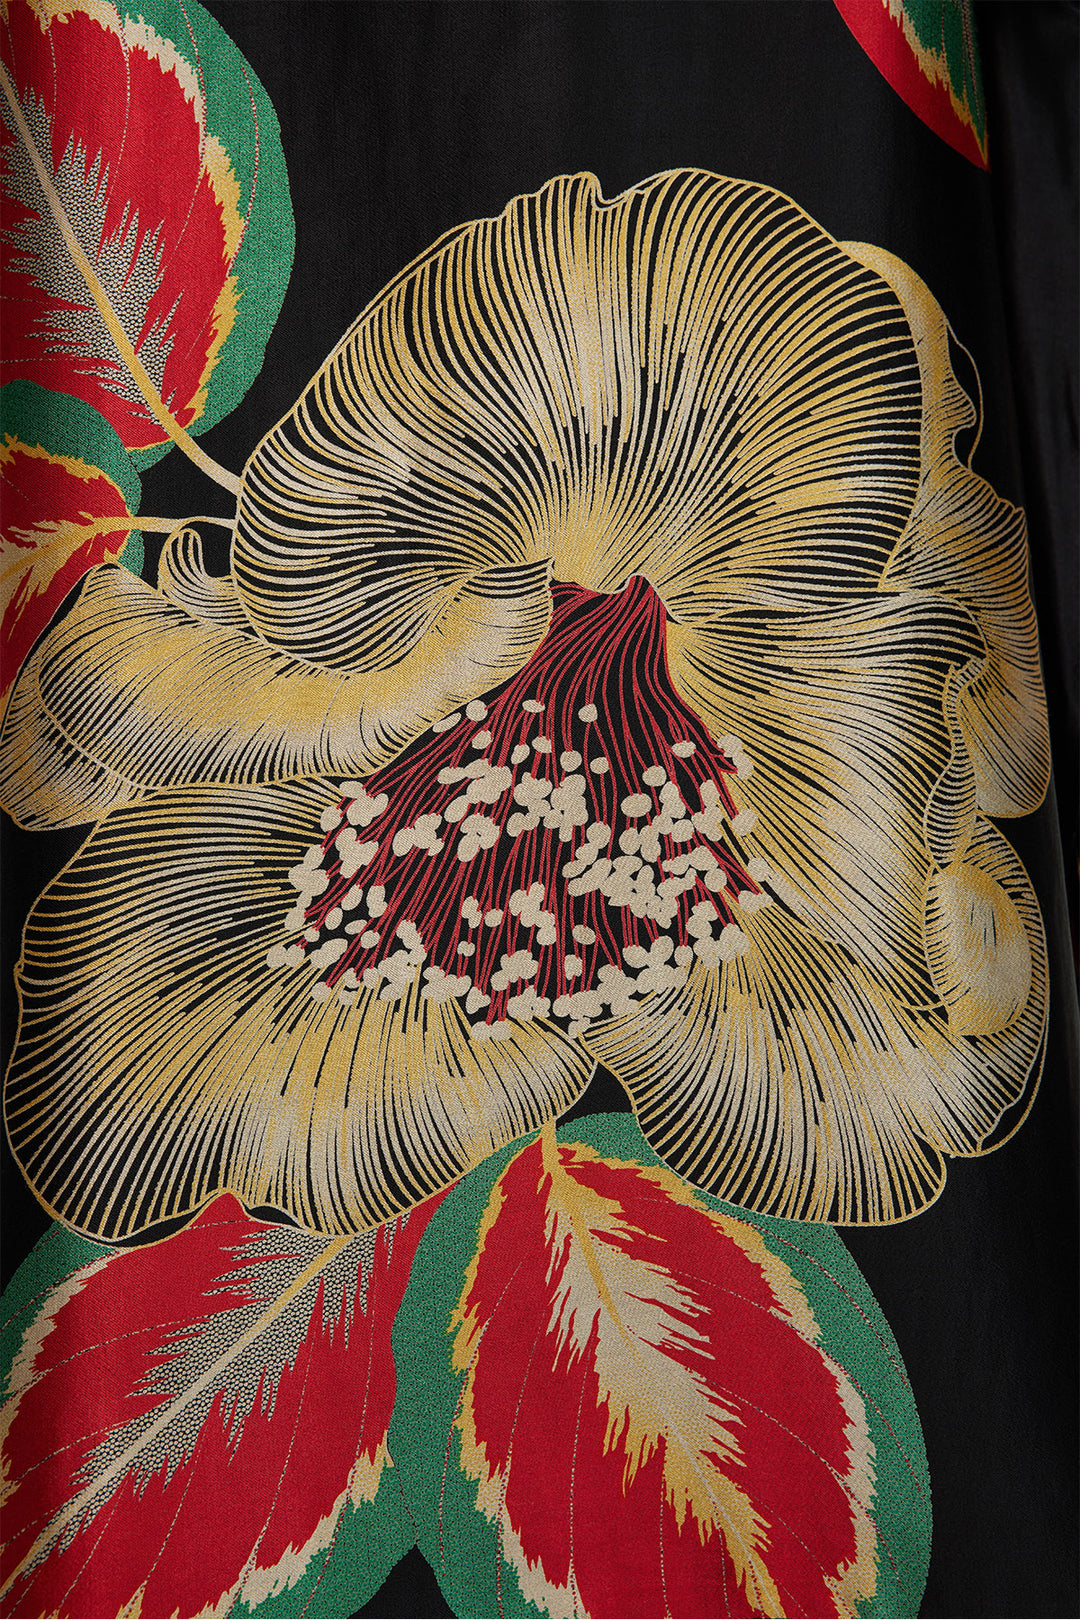 Robe longue confortable en soie à imprimé floral - Rouge